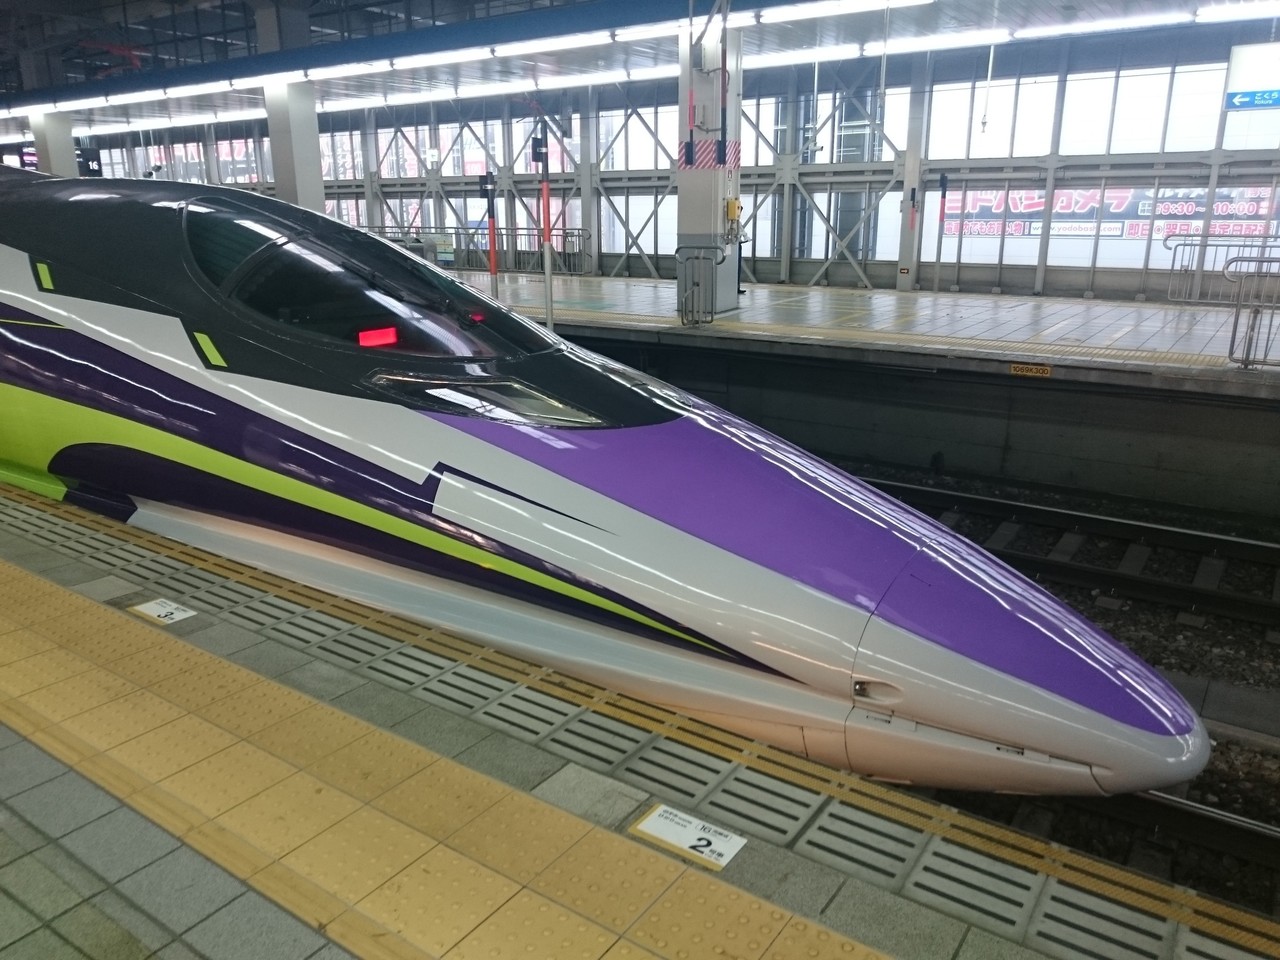 エヴァ新幹線18年まで期間延長 大好評の理由 渚カヲル自動放送登場のタイミングは かぜのように過ごす